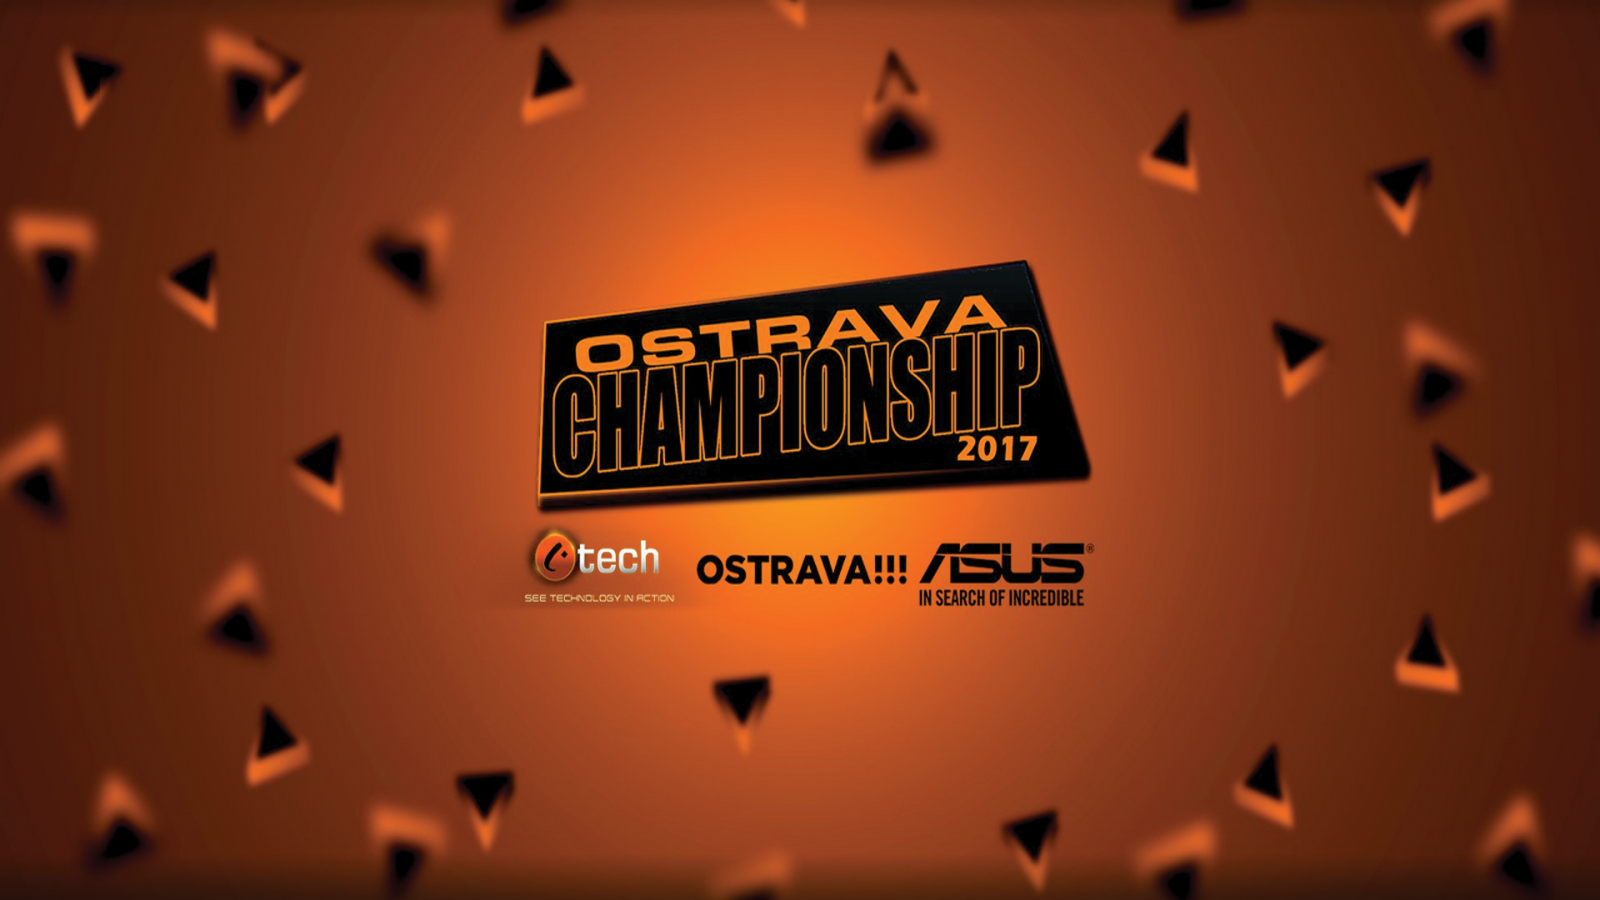 OSTRAVA championship